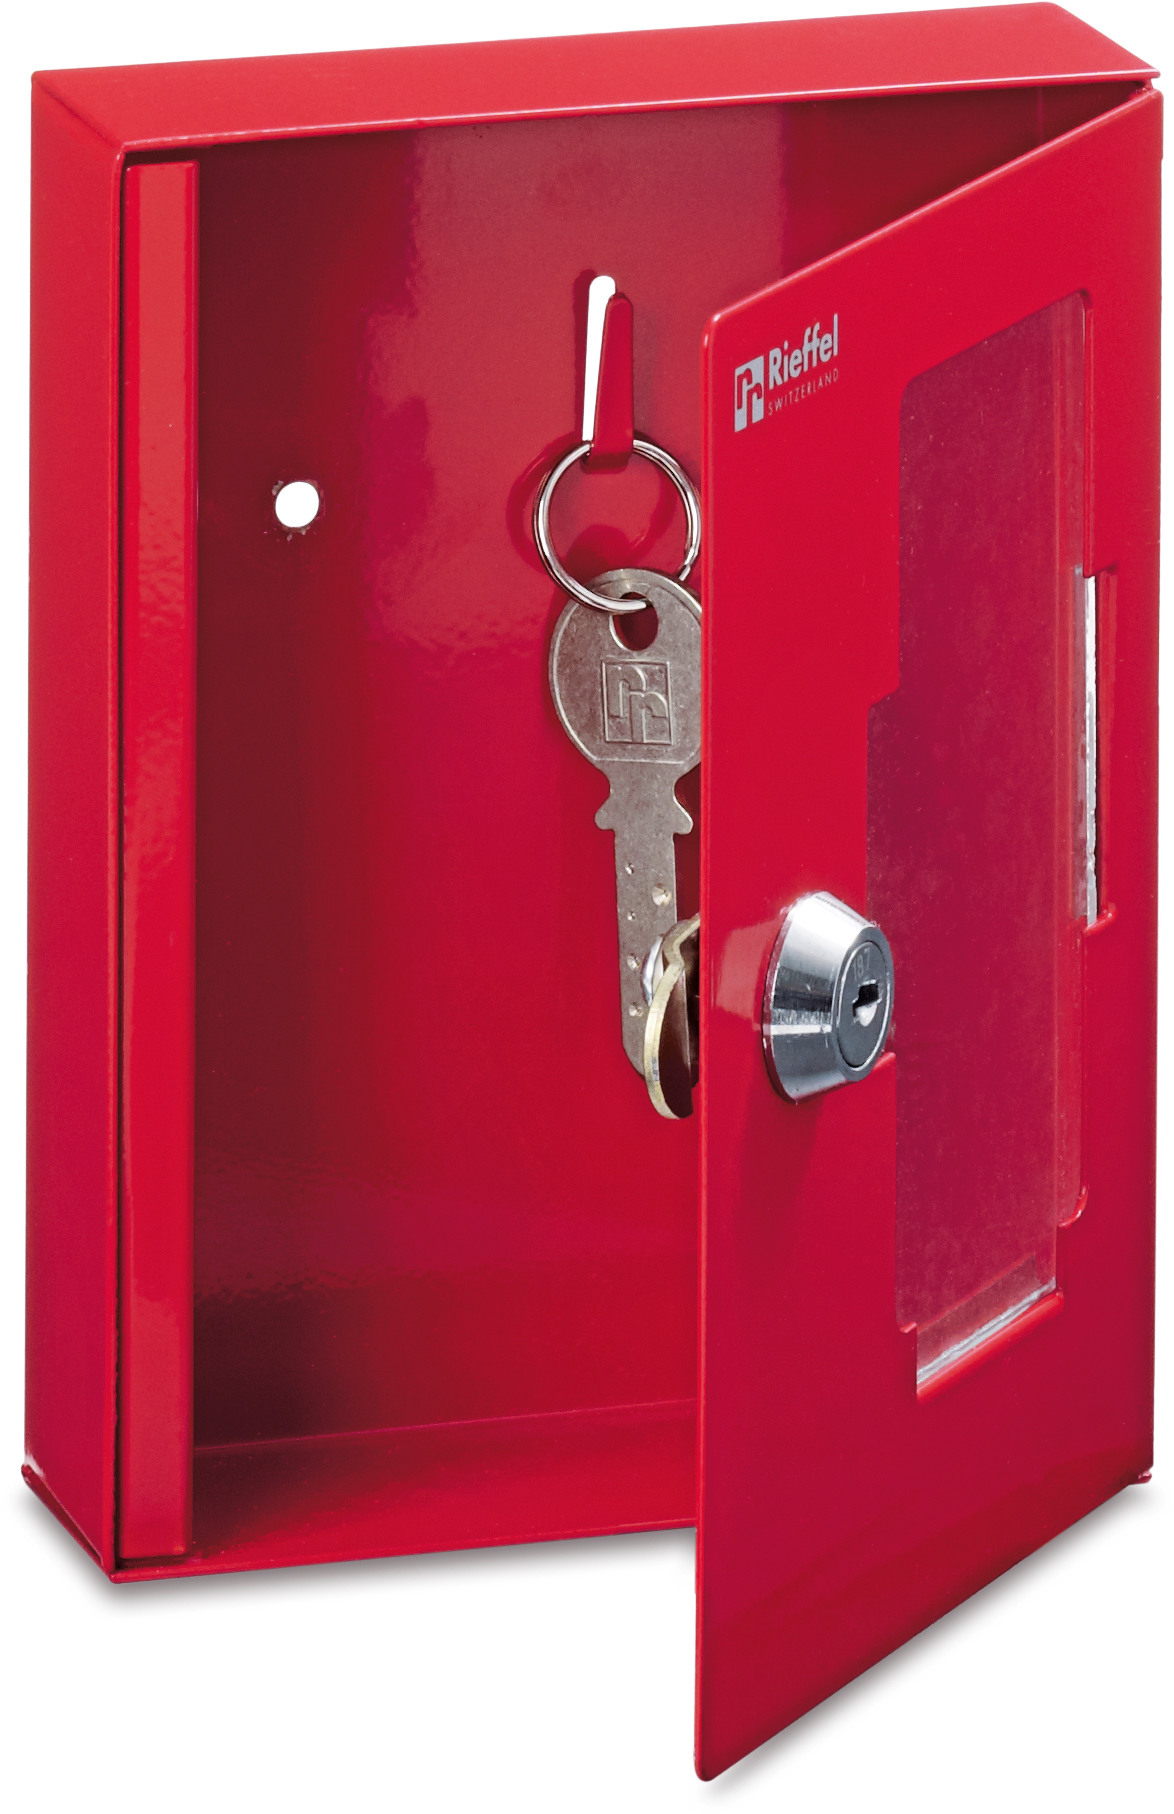 RIEFFEL SWITZERLAND Caisse clés K_1 rouge, 152x120x38mm